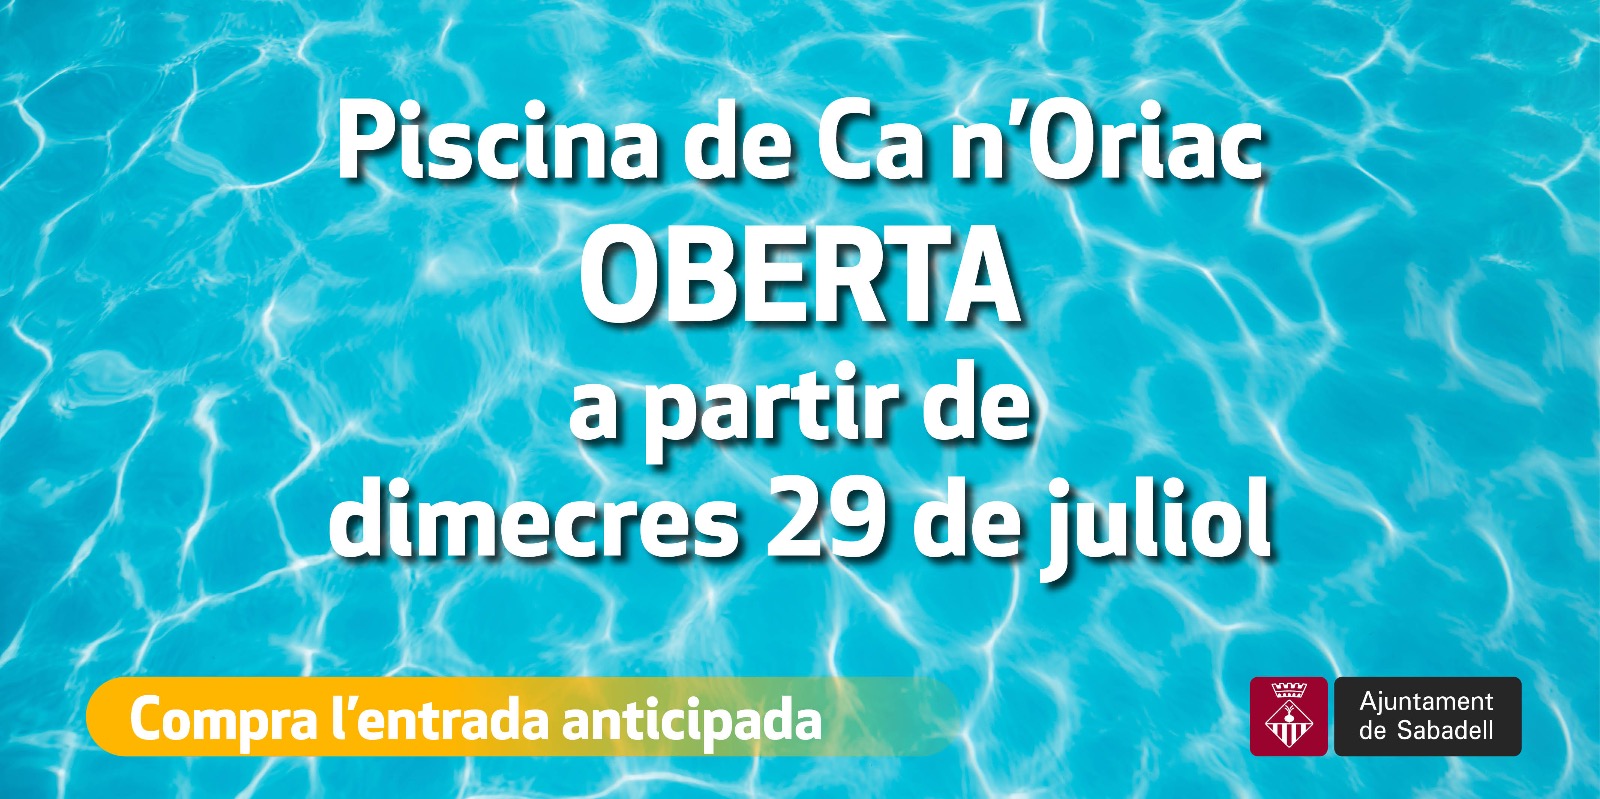 La piscina municipal de Ca n’Oriac obre demà dimecres